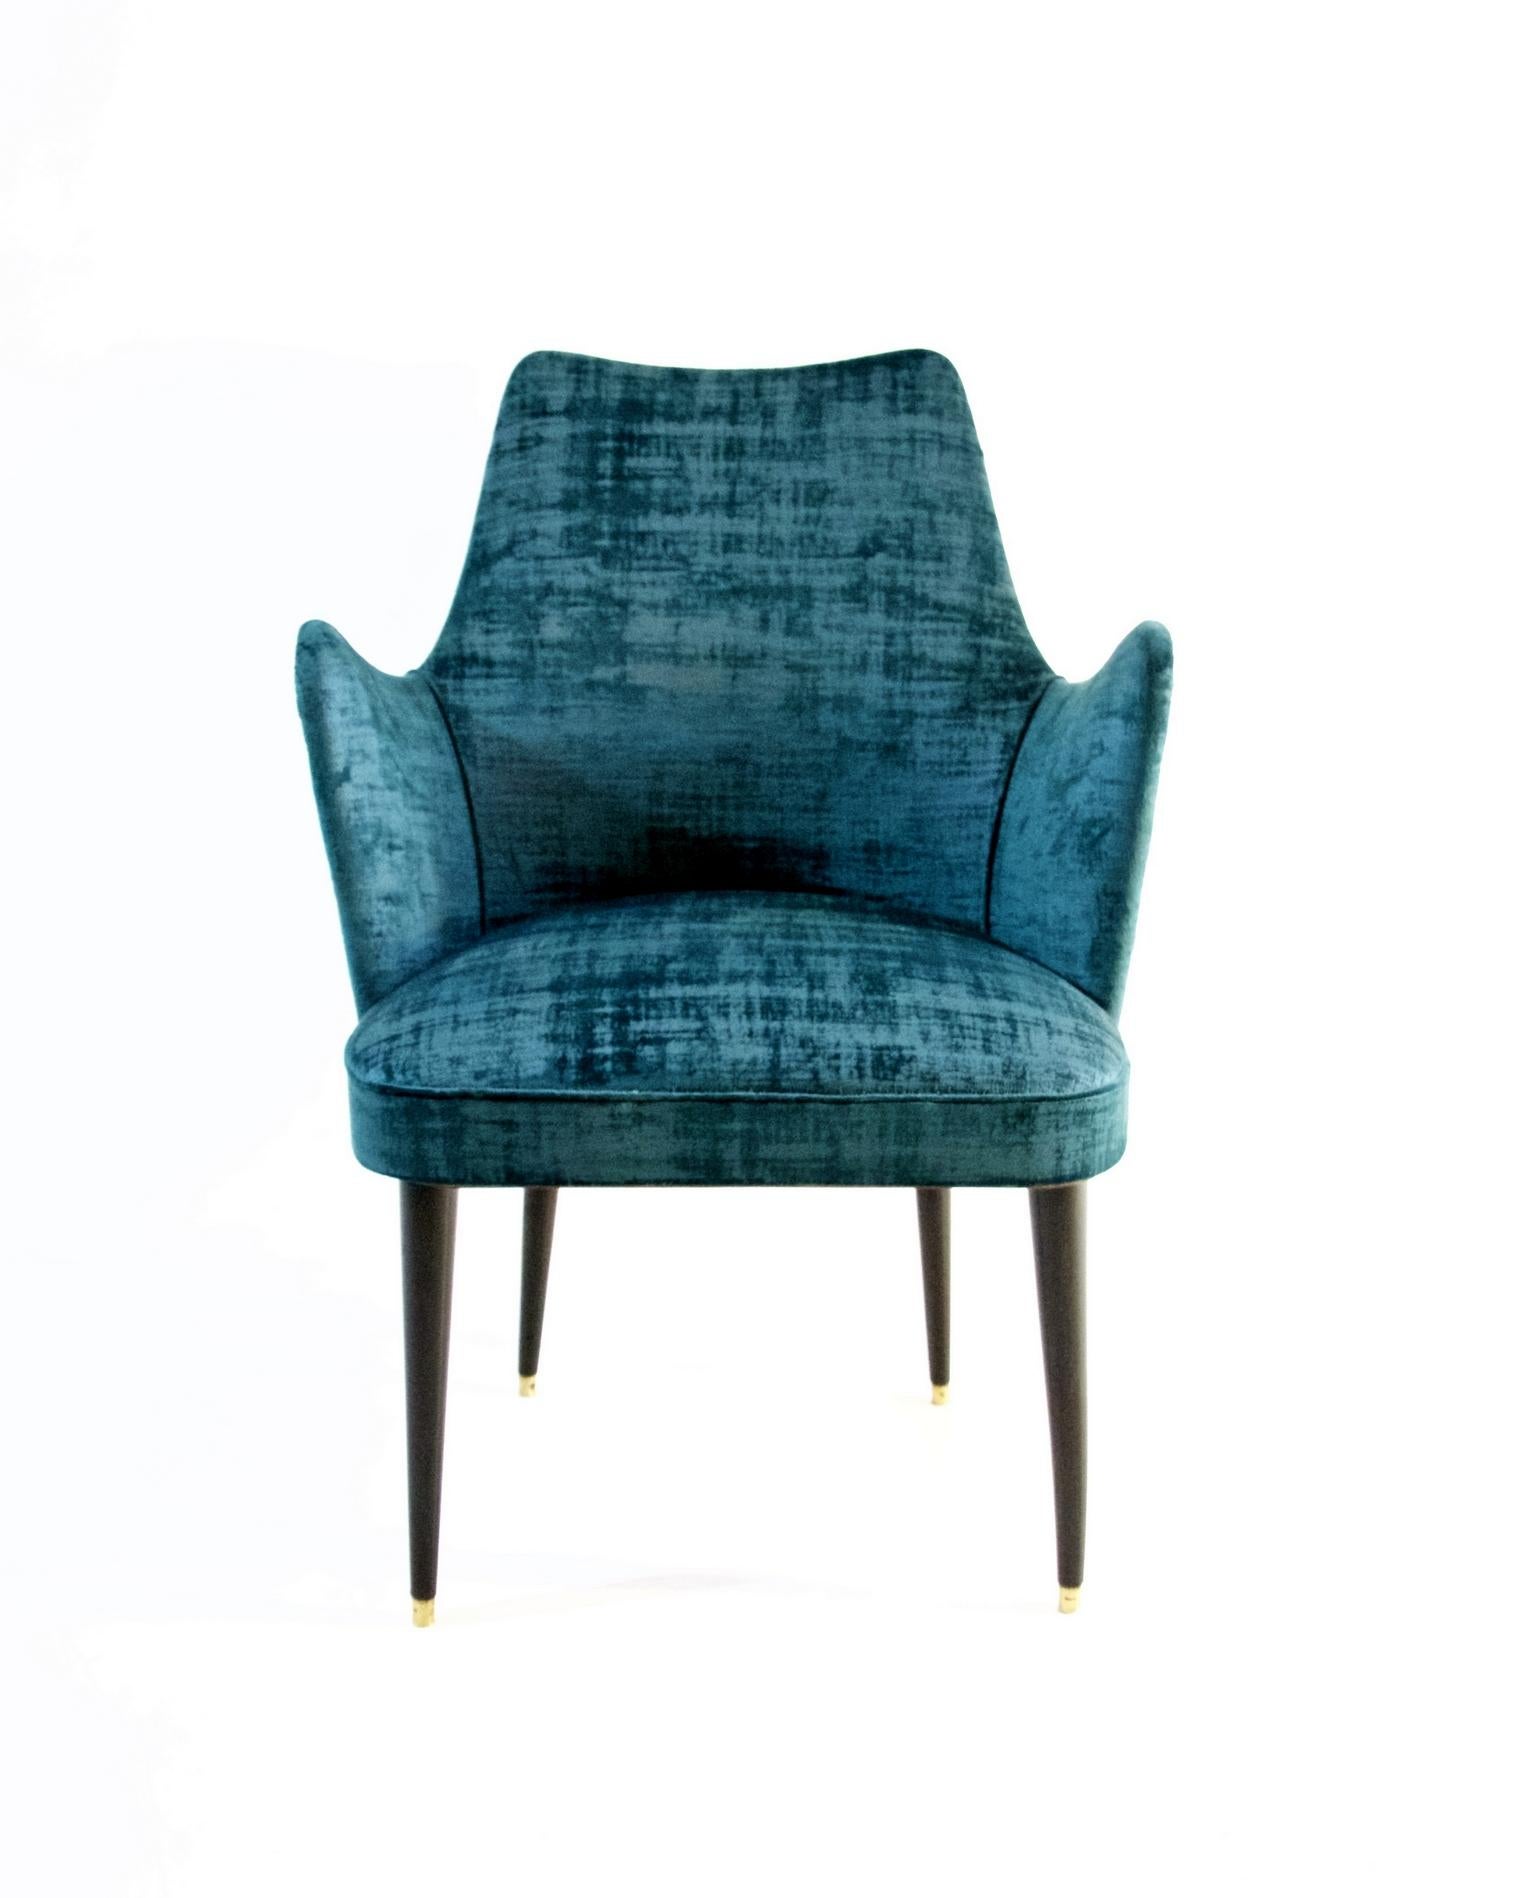 20th Century Midcentury Teal Velvet Chairs by Osvaldo Borsani, Italy